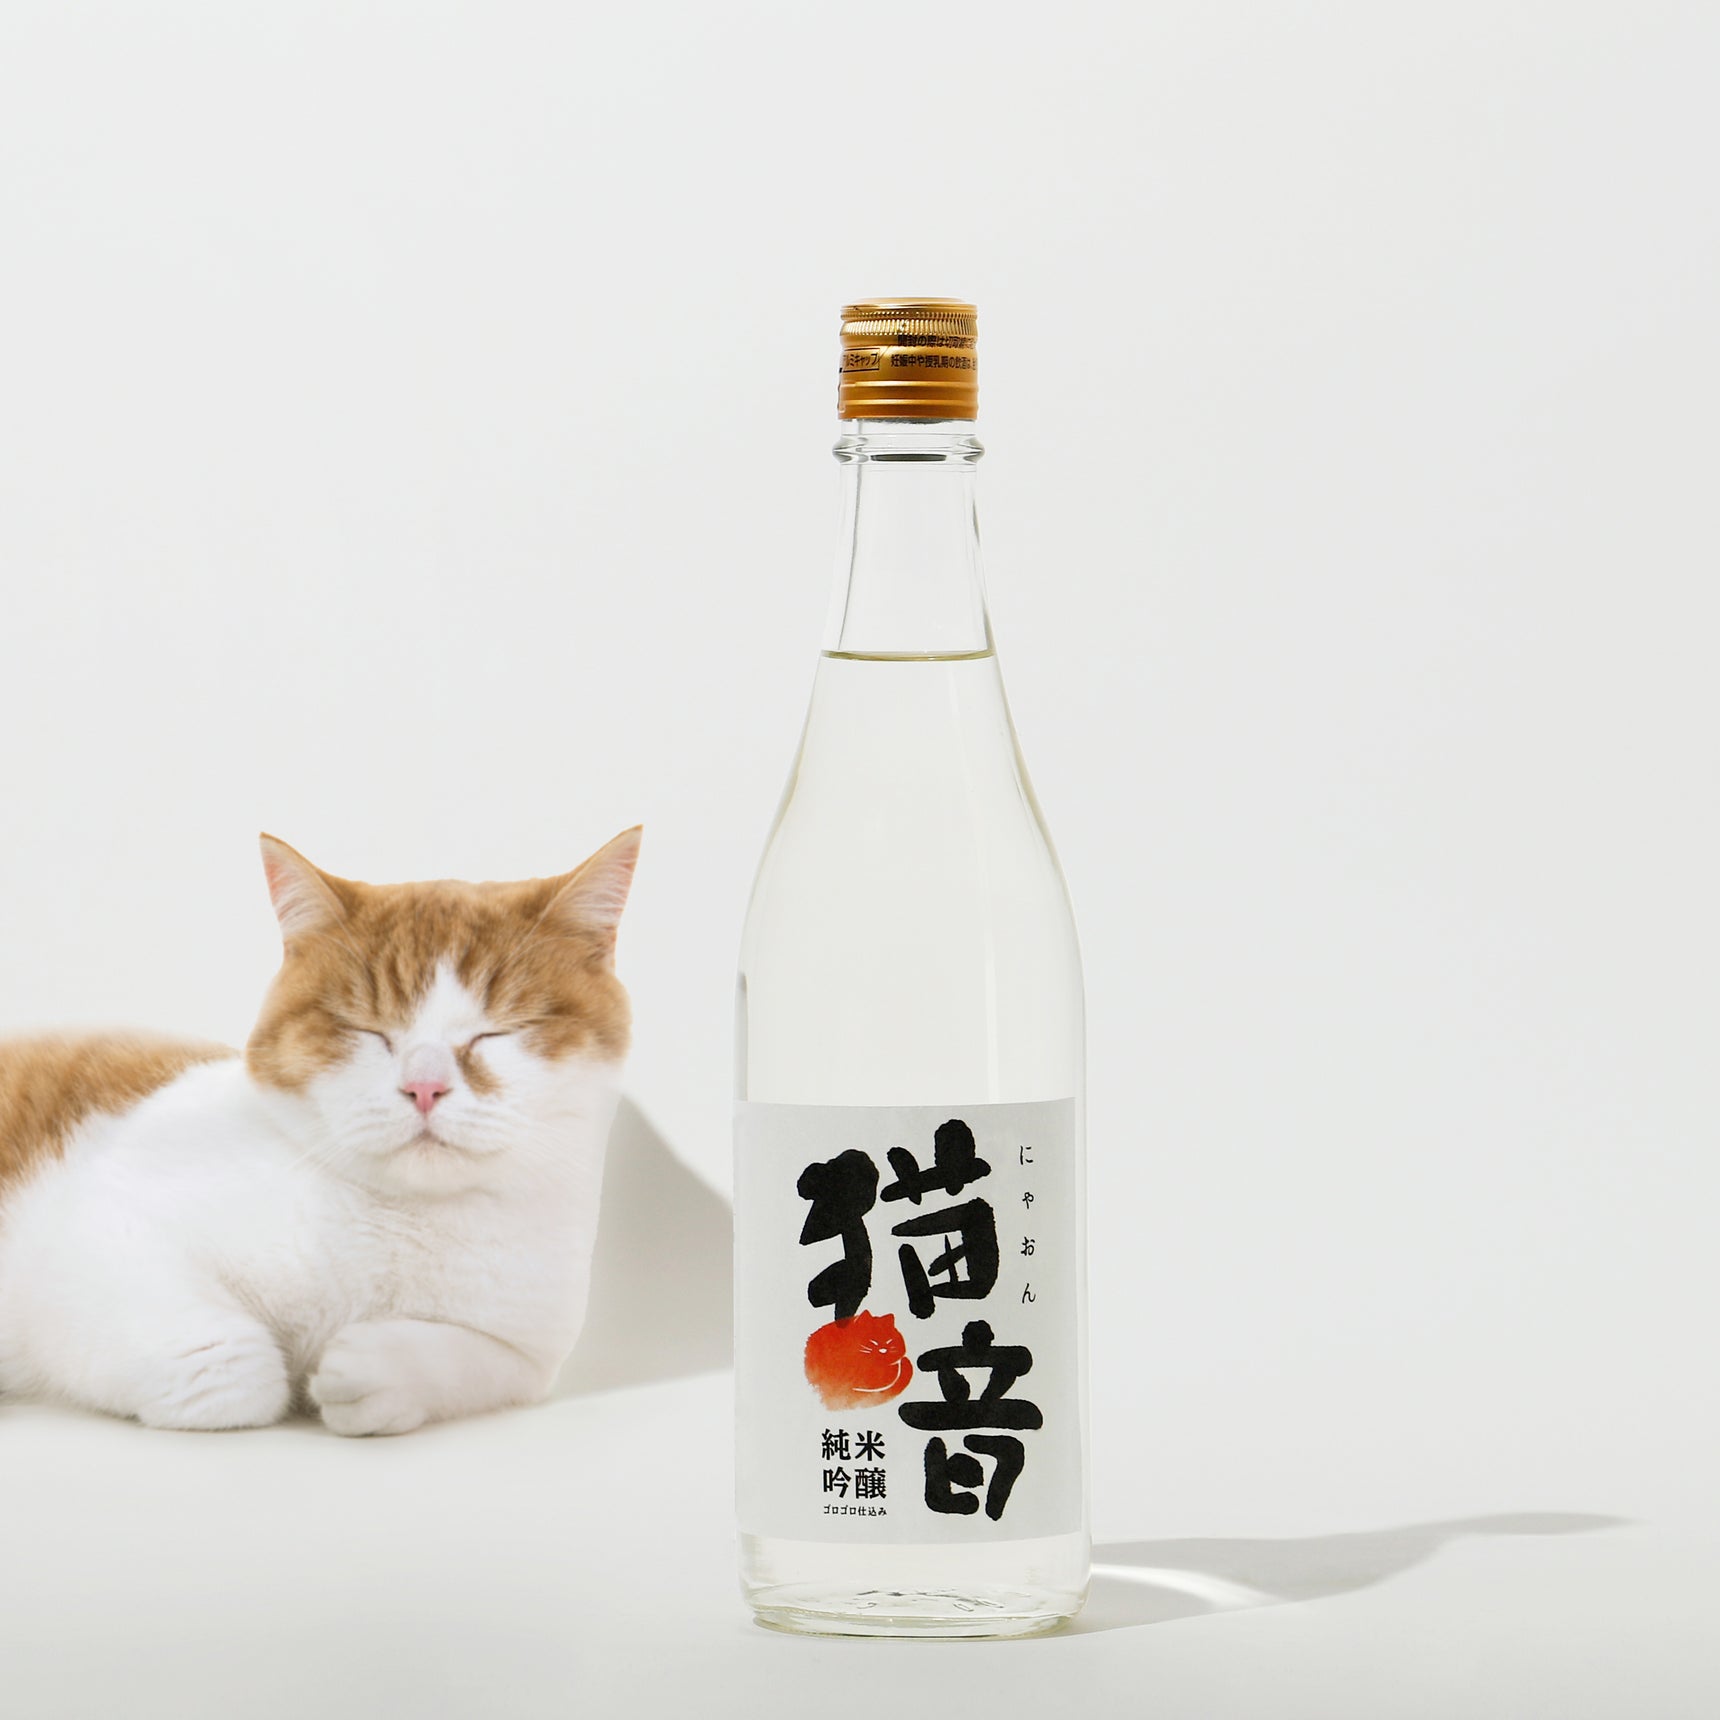 【2月22日は猫の日】猫の「ゴロゴロ音」を222時間聞かせた、前代未聞「ゴロゴロ仕込み」の日本酒が登場